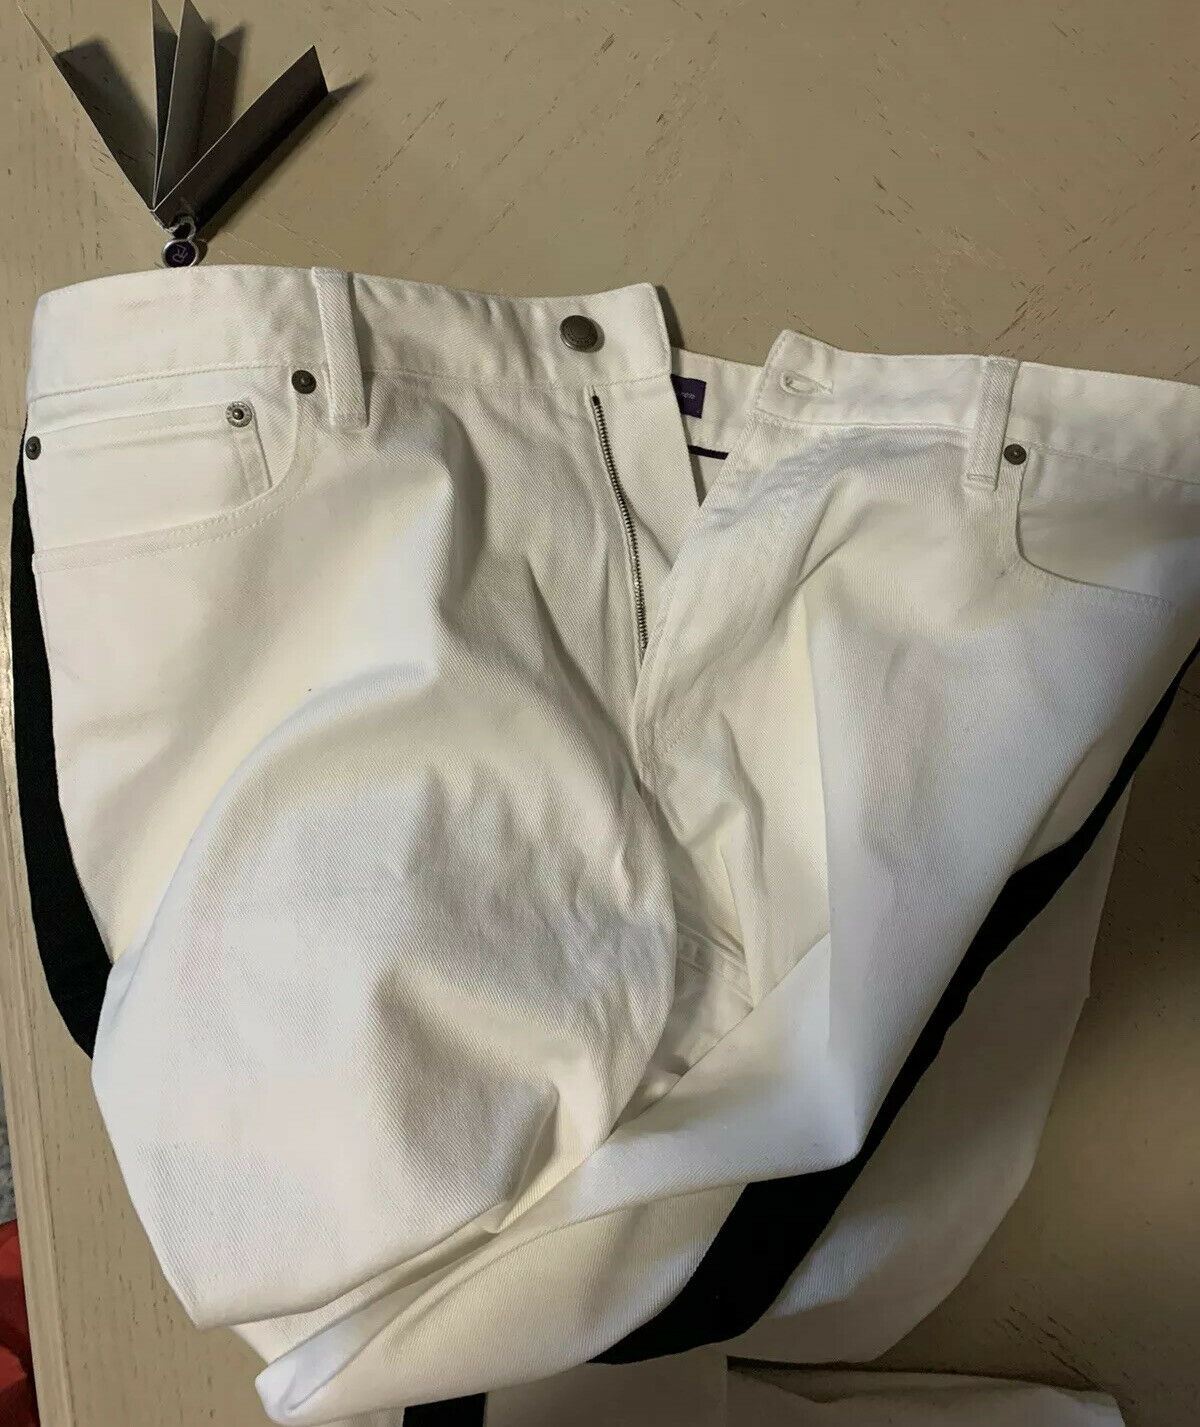 NWT $695 Ralph Lauren Purple Label Mens Jeans Pants White/Black 40/32L Italy